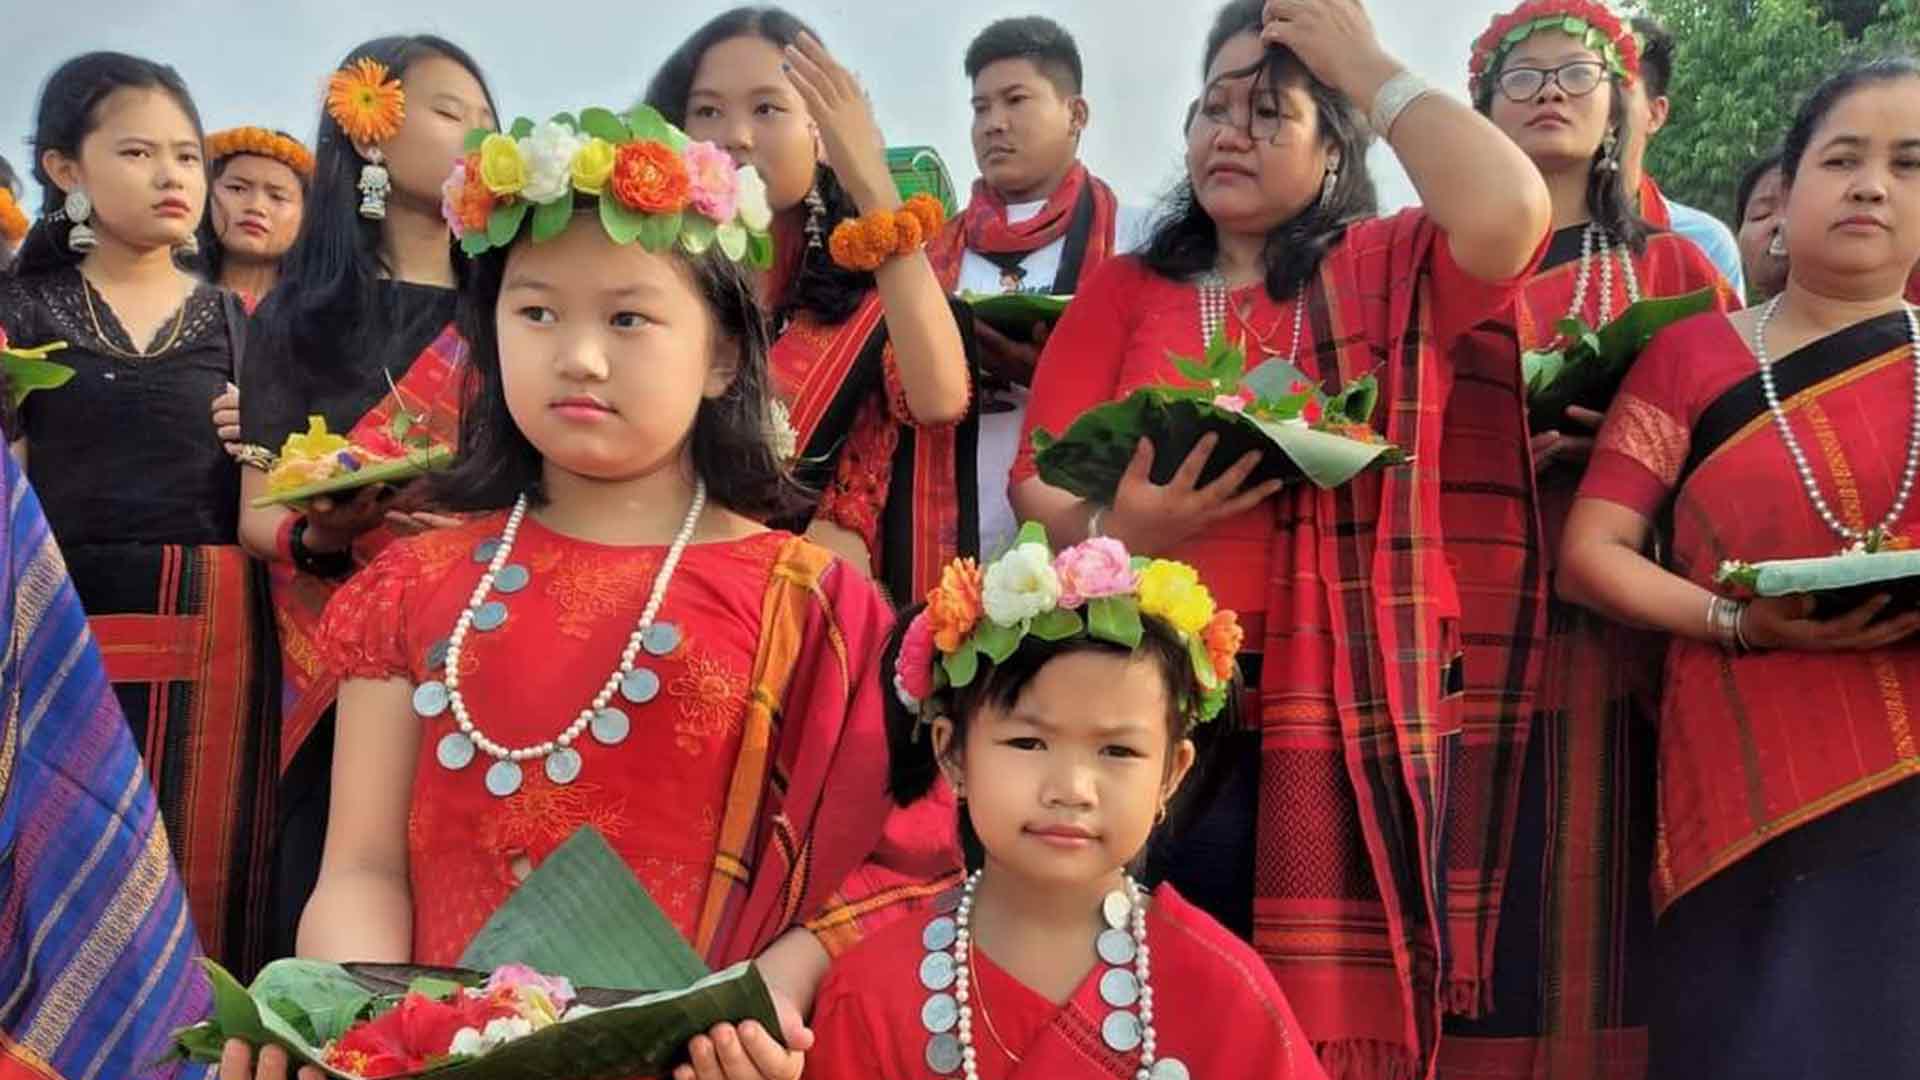 Diversity Traditions: Pankhwa